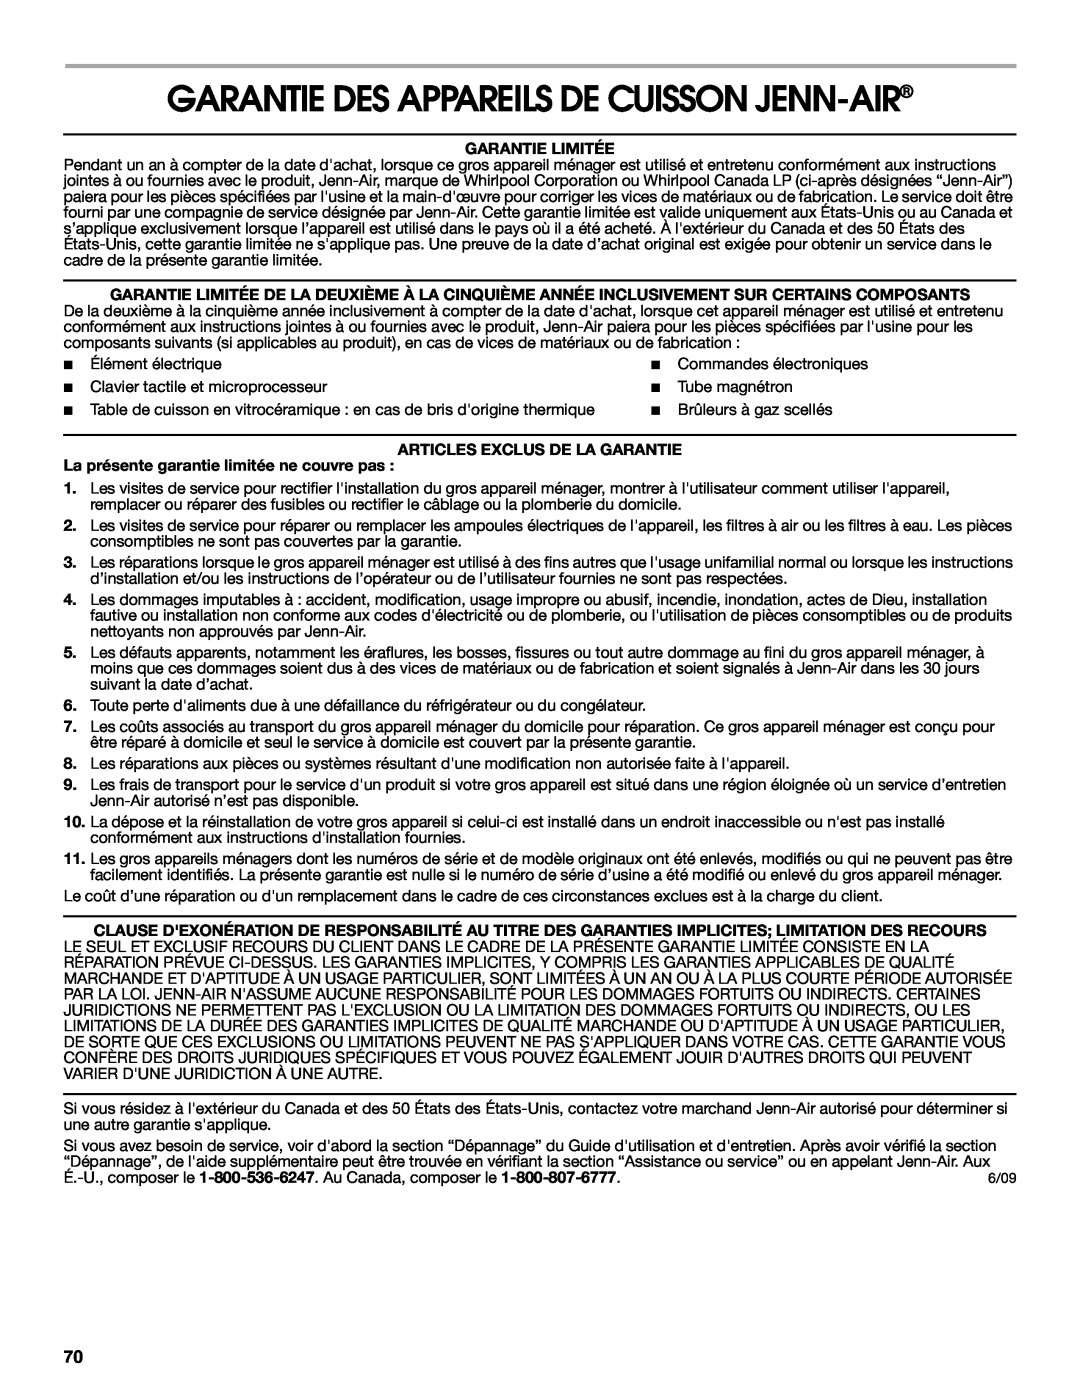 Jenn-Air JMW3430 manual Garantie Des Appareils De Cuisson Jenn-Air, Garantie Limitée, Articles Exclus De La Garantie 